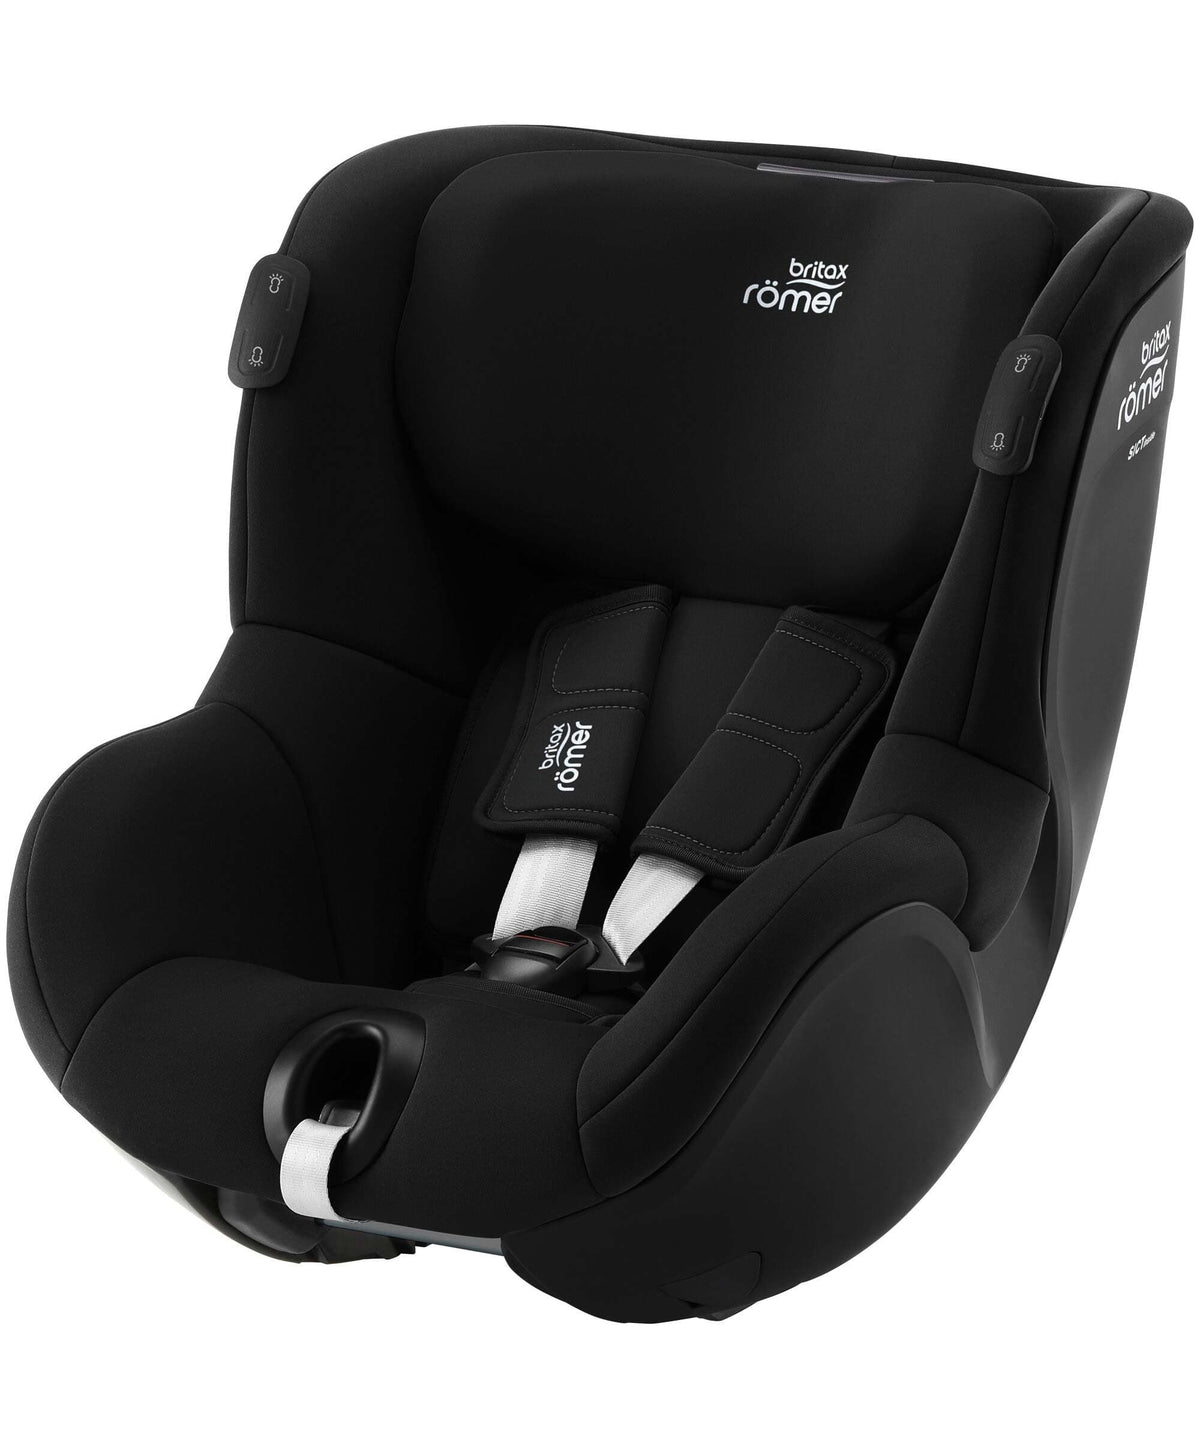 Britax Römer Dualfix i-Size review - Car seats from birth - Car Seats